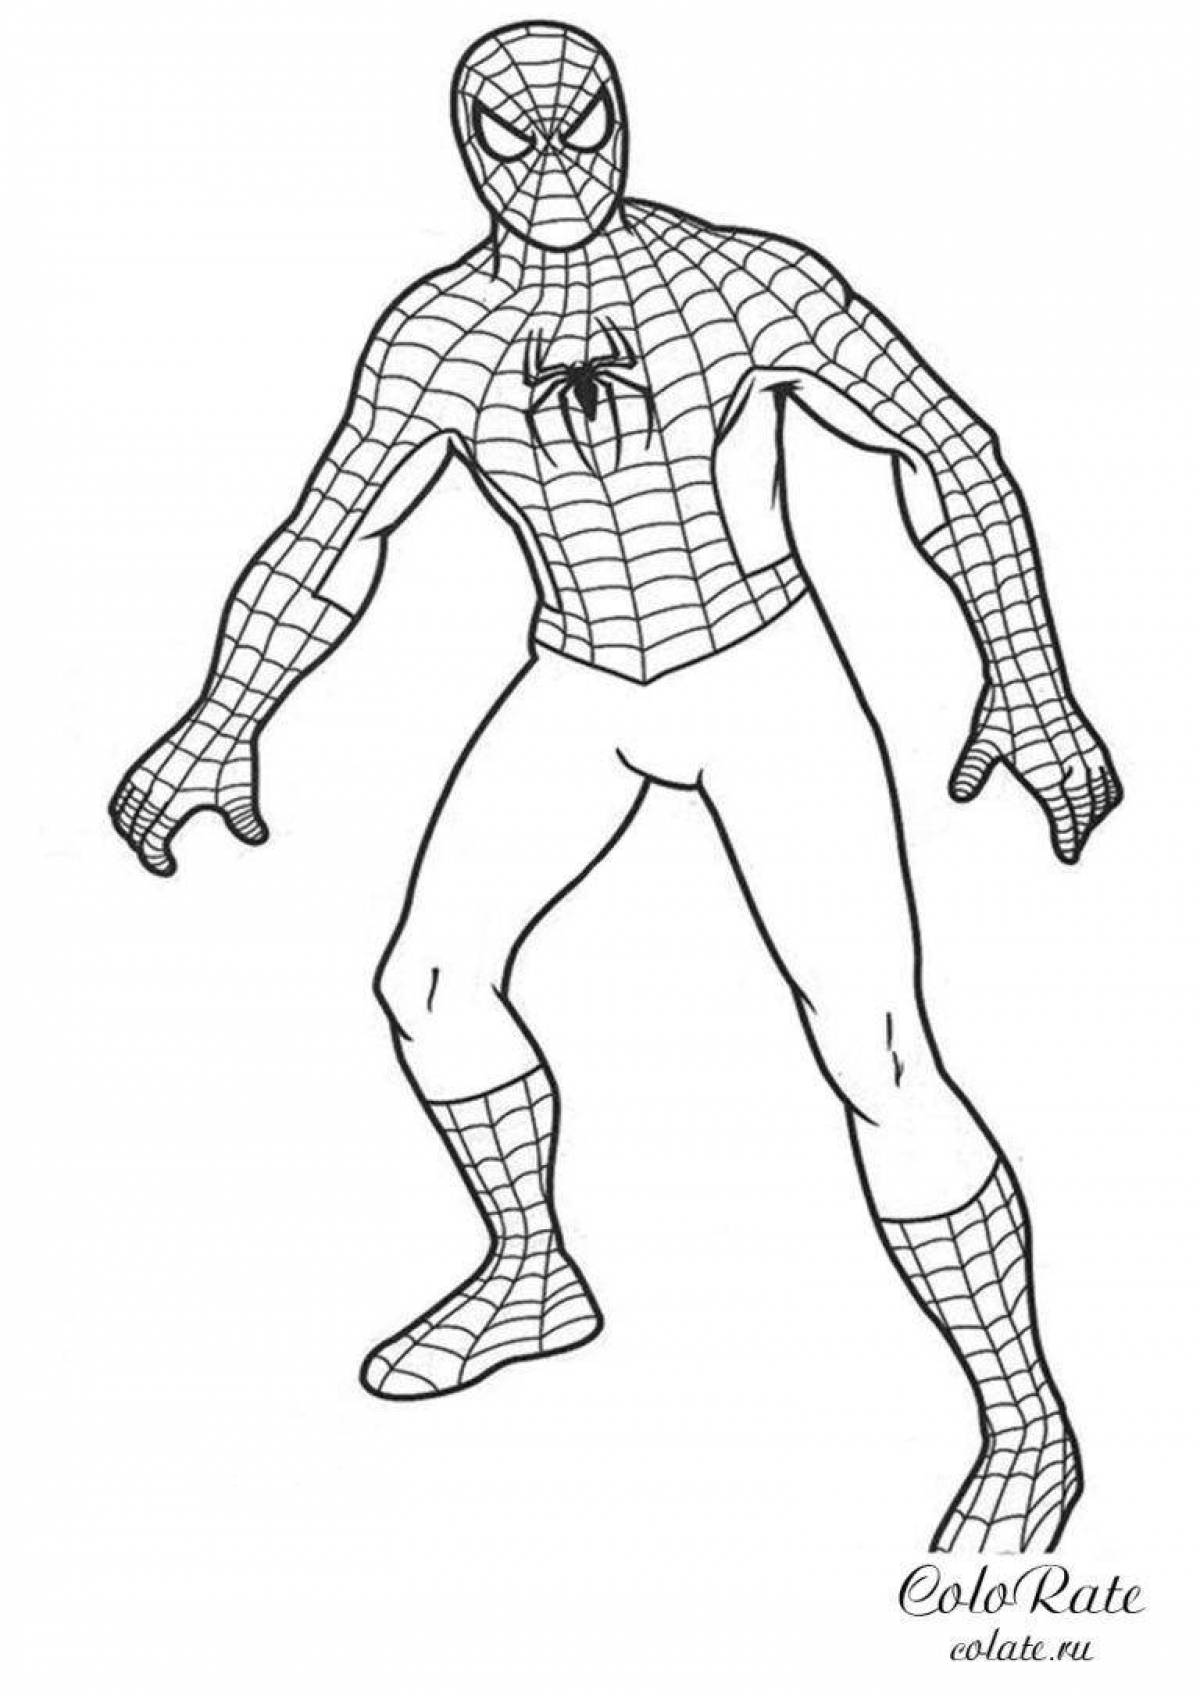 Динамический рисунок человека-паука